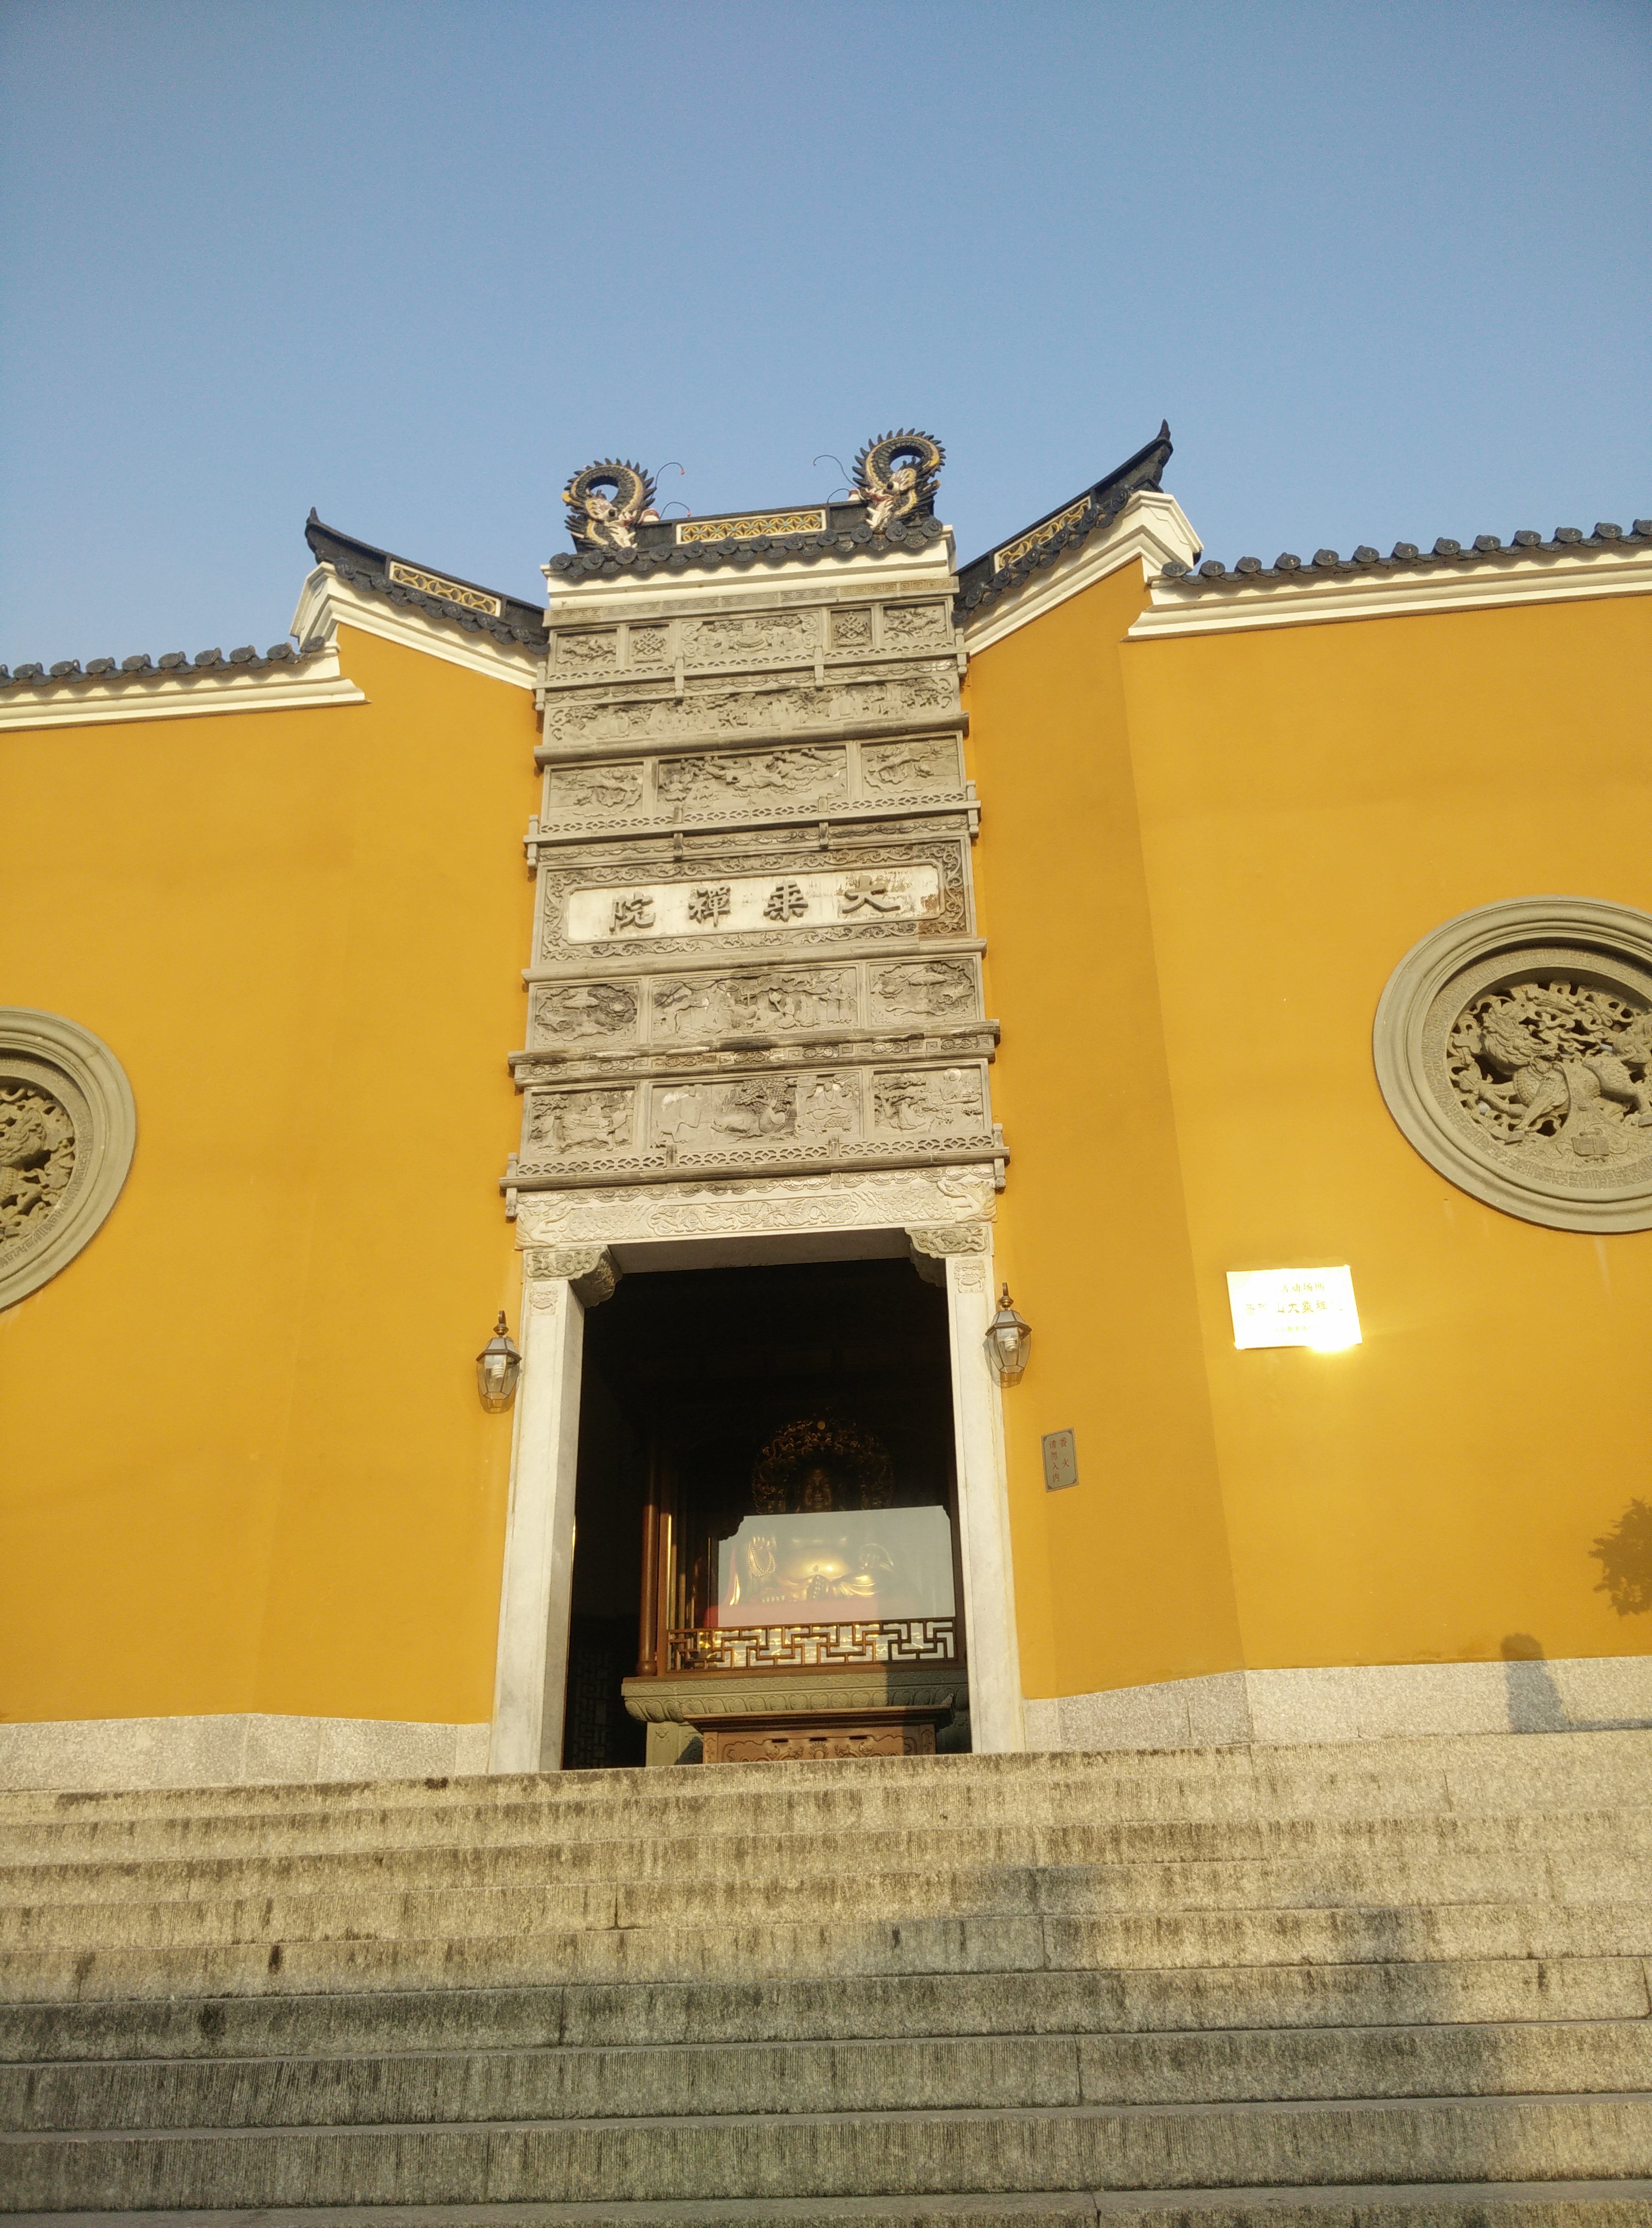 大乘庵有两大亮点,其一为主殿——圆通宝殿中供奉的水月观音像是三